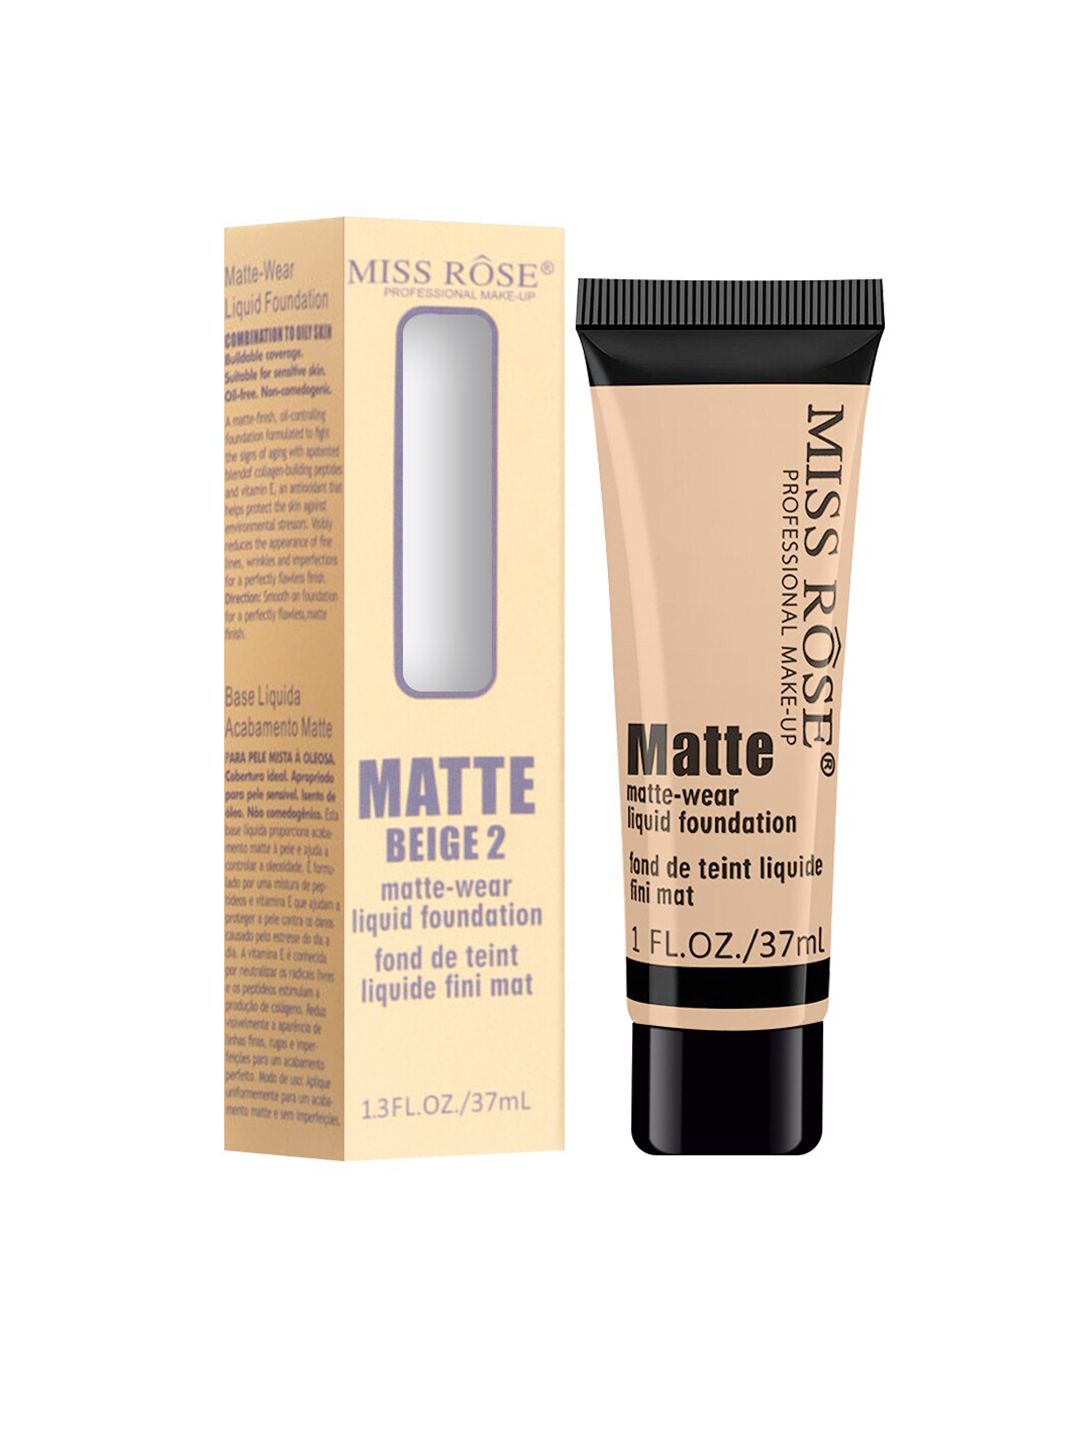 MISS ROSE Matte Finish Liquid Foundation Tube Beige 02 - 37 ml Price in India